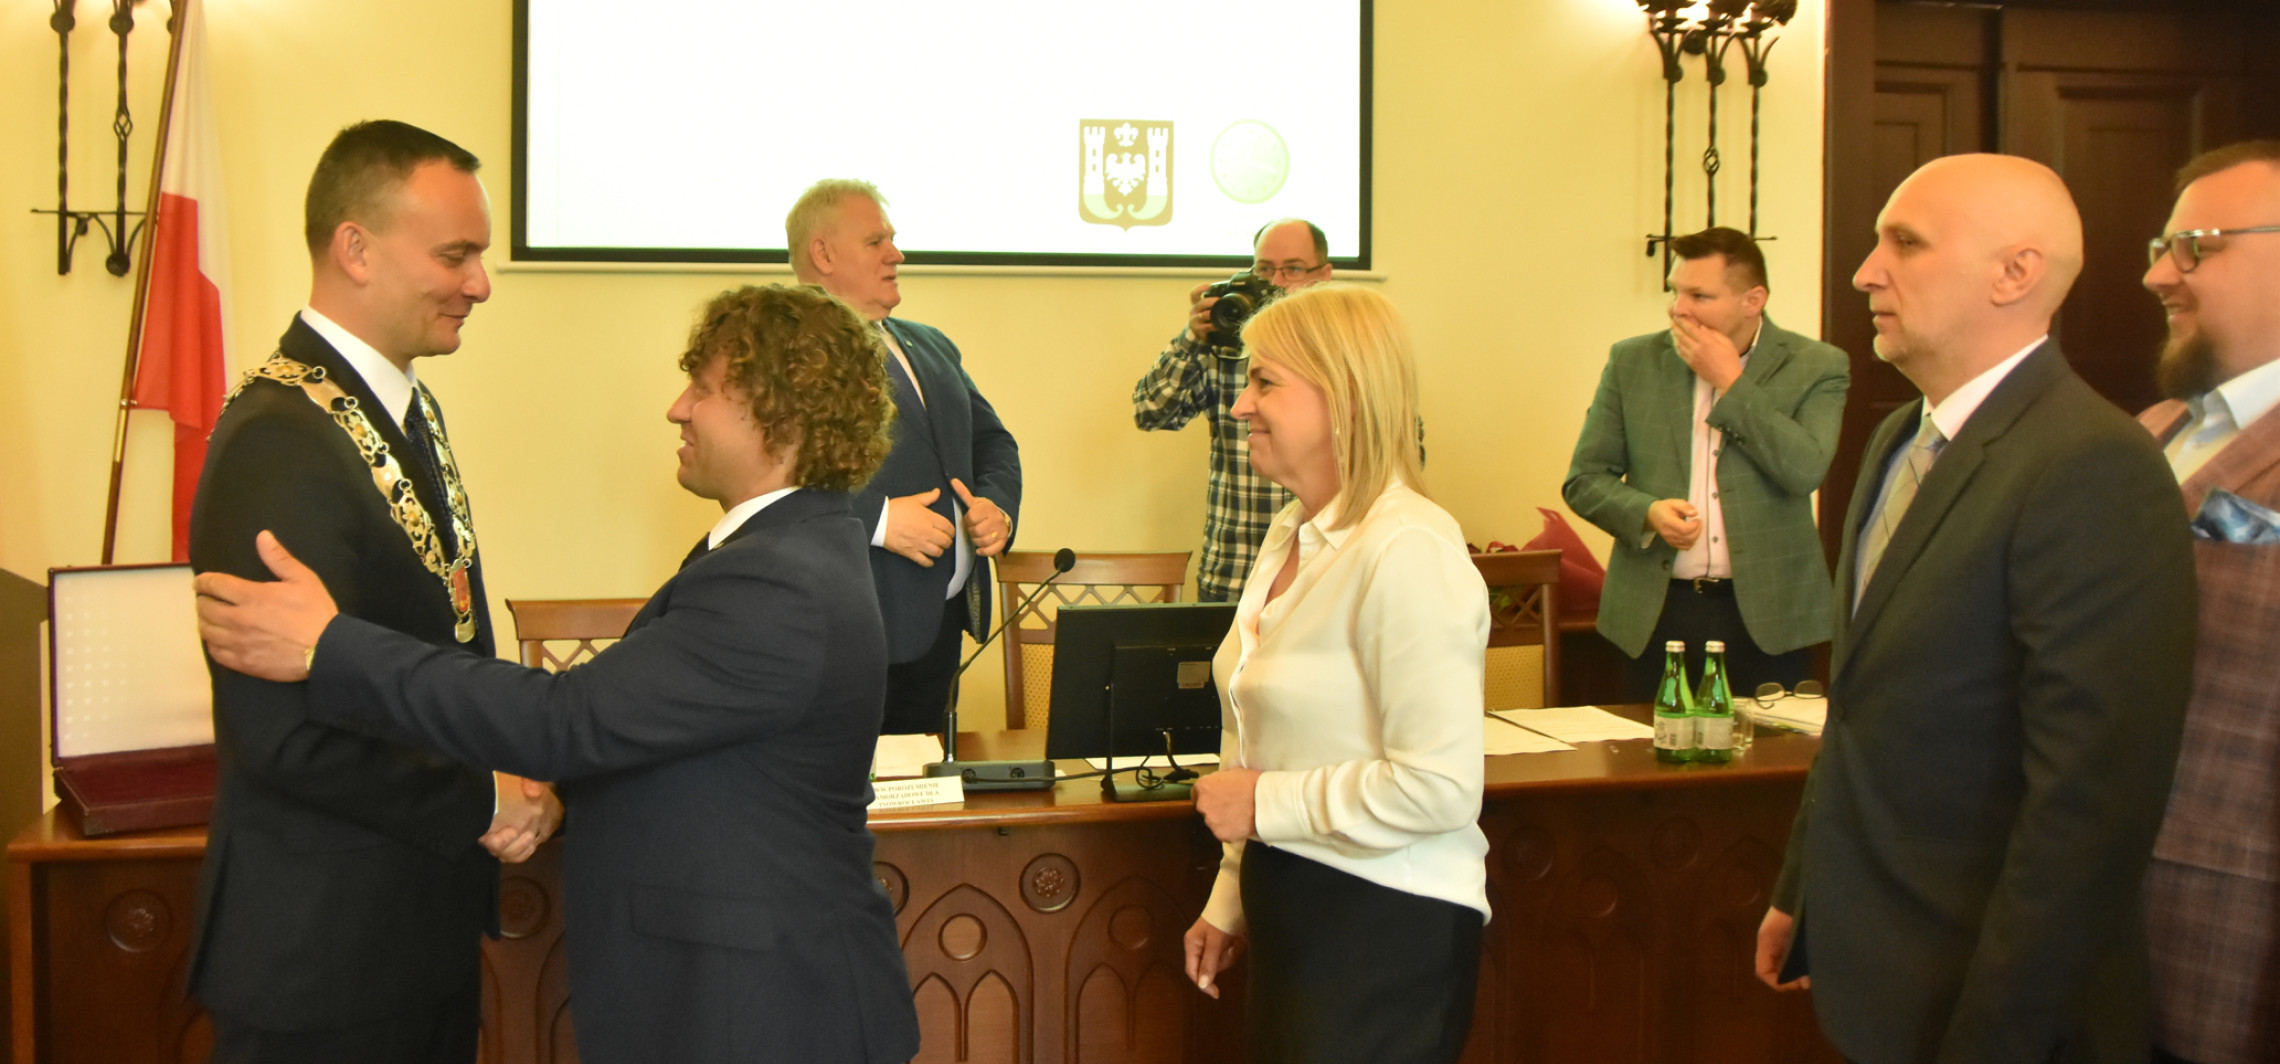 Inowrocław - Miejscy radni i prezydent złożyli ślubowanie. Wybrano nowego przewodniczącego